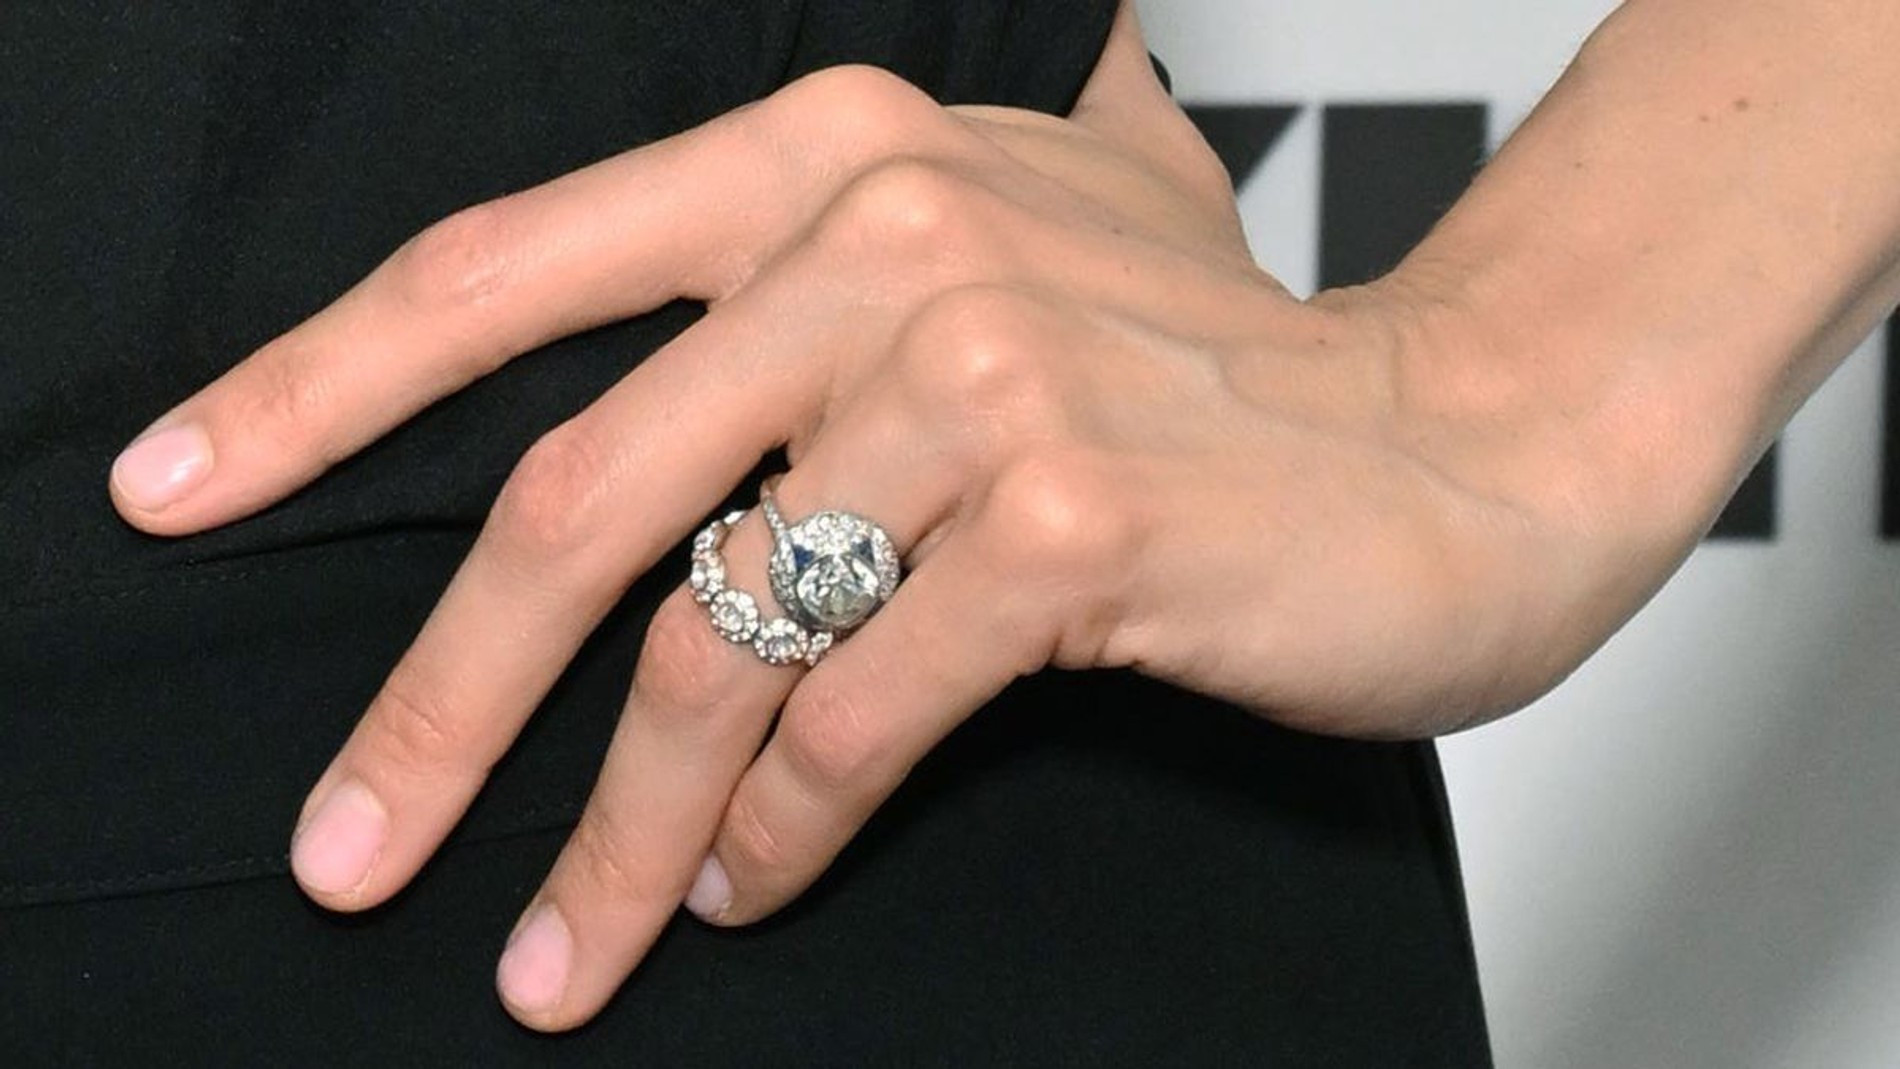 Кольцо на безымянном пальце Мелани впервые заметили еще несколько месяцев назад
Фото: Getty Images